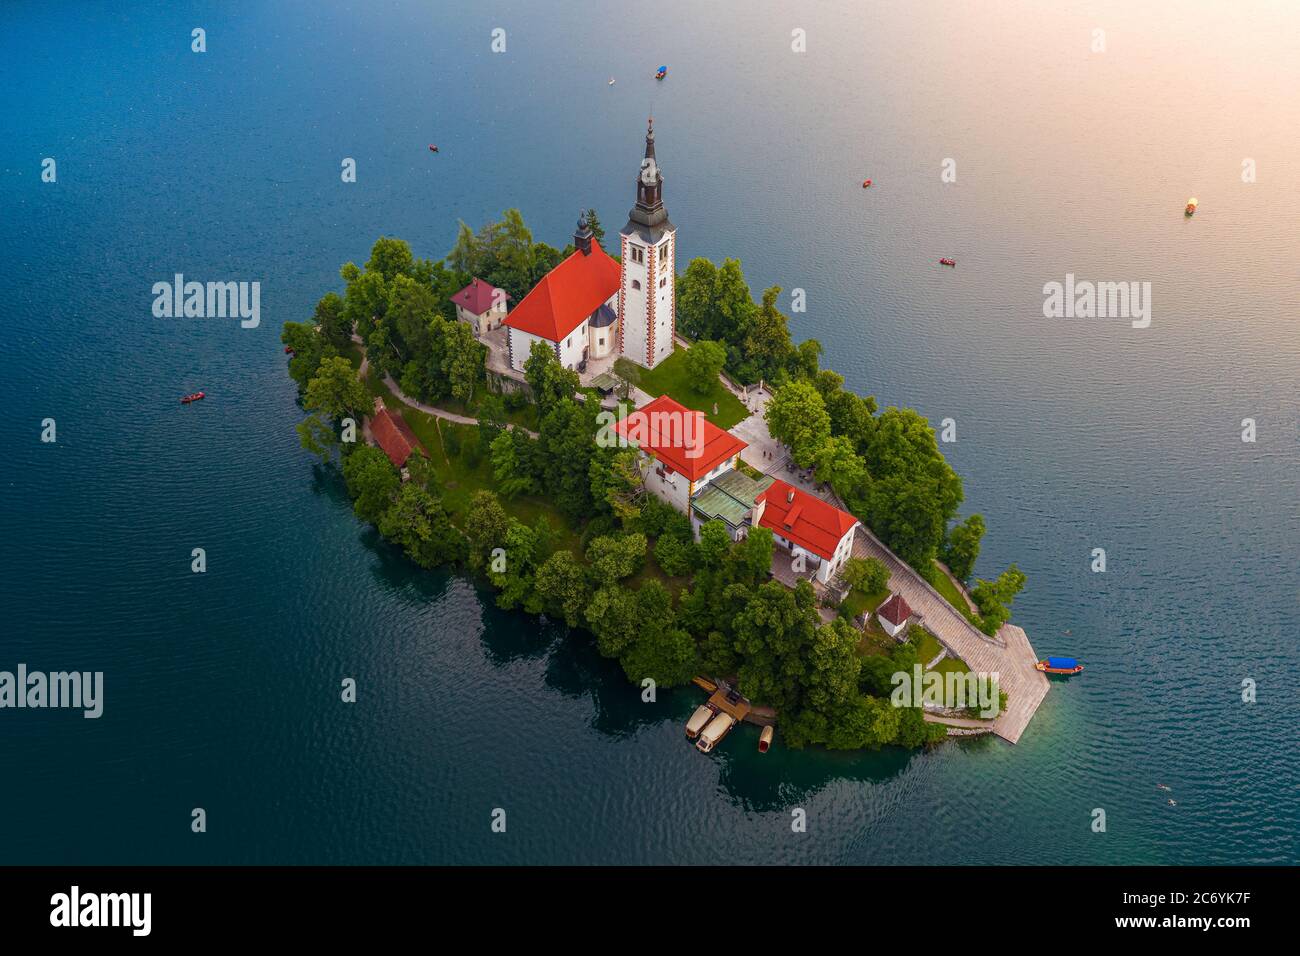 Der See von Bled, Slowenien - Luftbild des schönen Sees Bled (Blejsko Jezero) mit der Wallfahrtskirche Mariä Himmelfahrt der Maria auf einer kleinen Insel mit Stockfoto